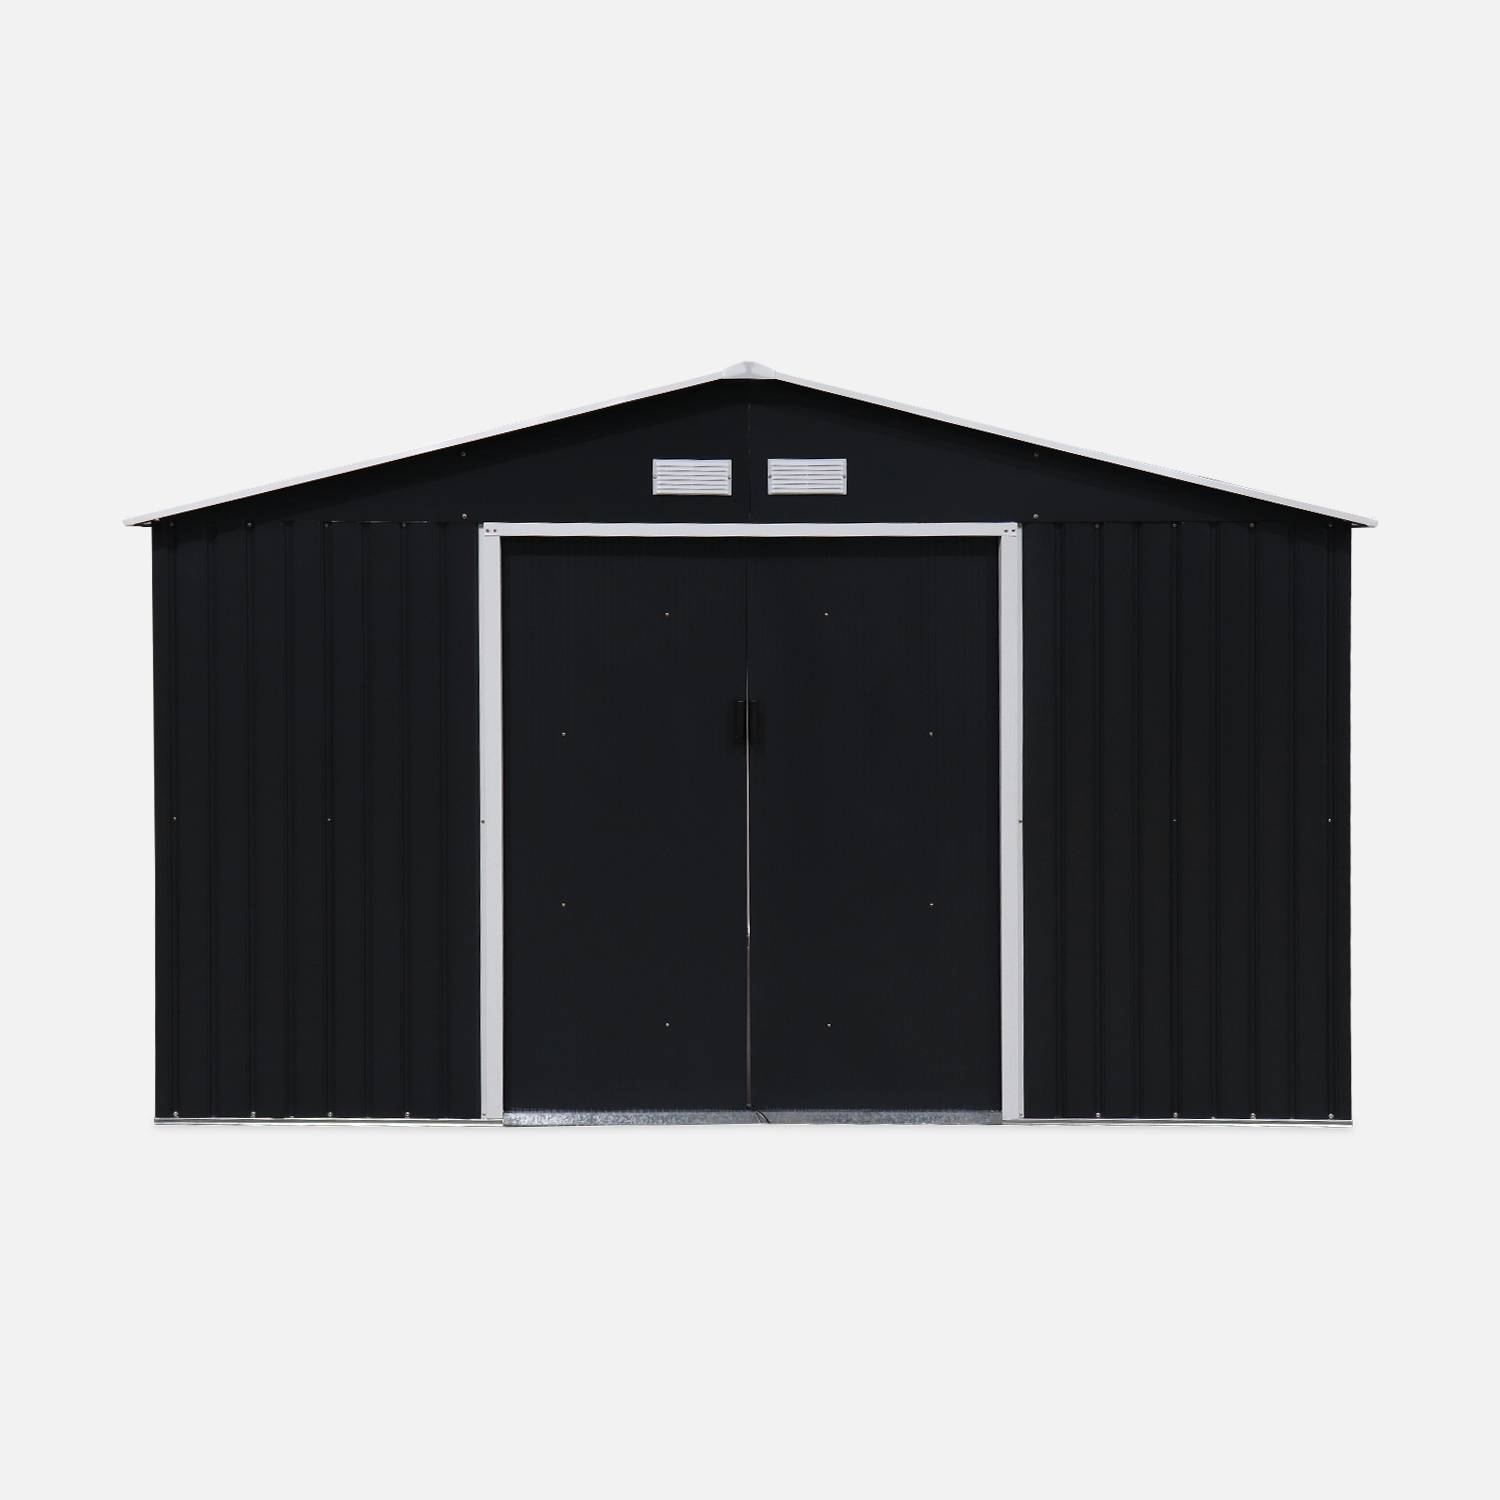 Tuinhuisje van metaal Boulonnais 10,85m²  antraciet en wit, met dubbele deur met vergrendeling en vloermontageset inbegrepen, berging voor tuingereedschap Photo3